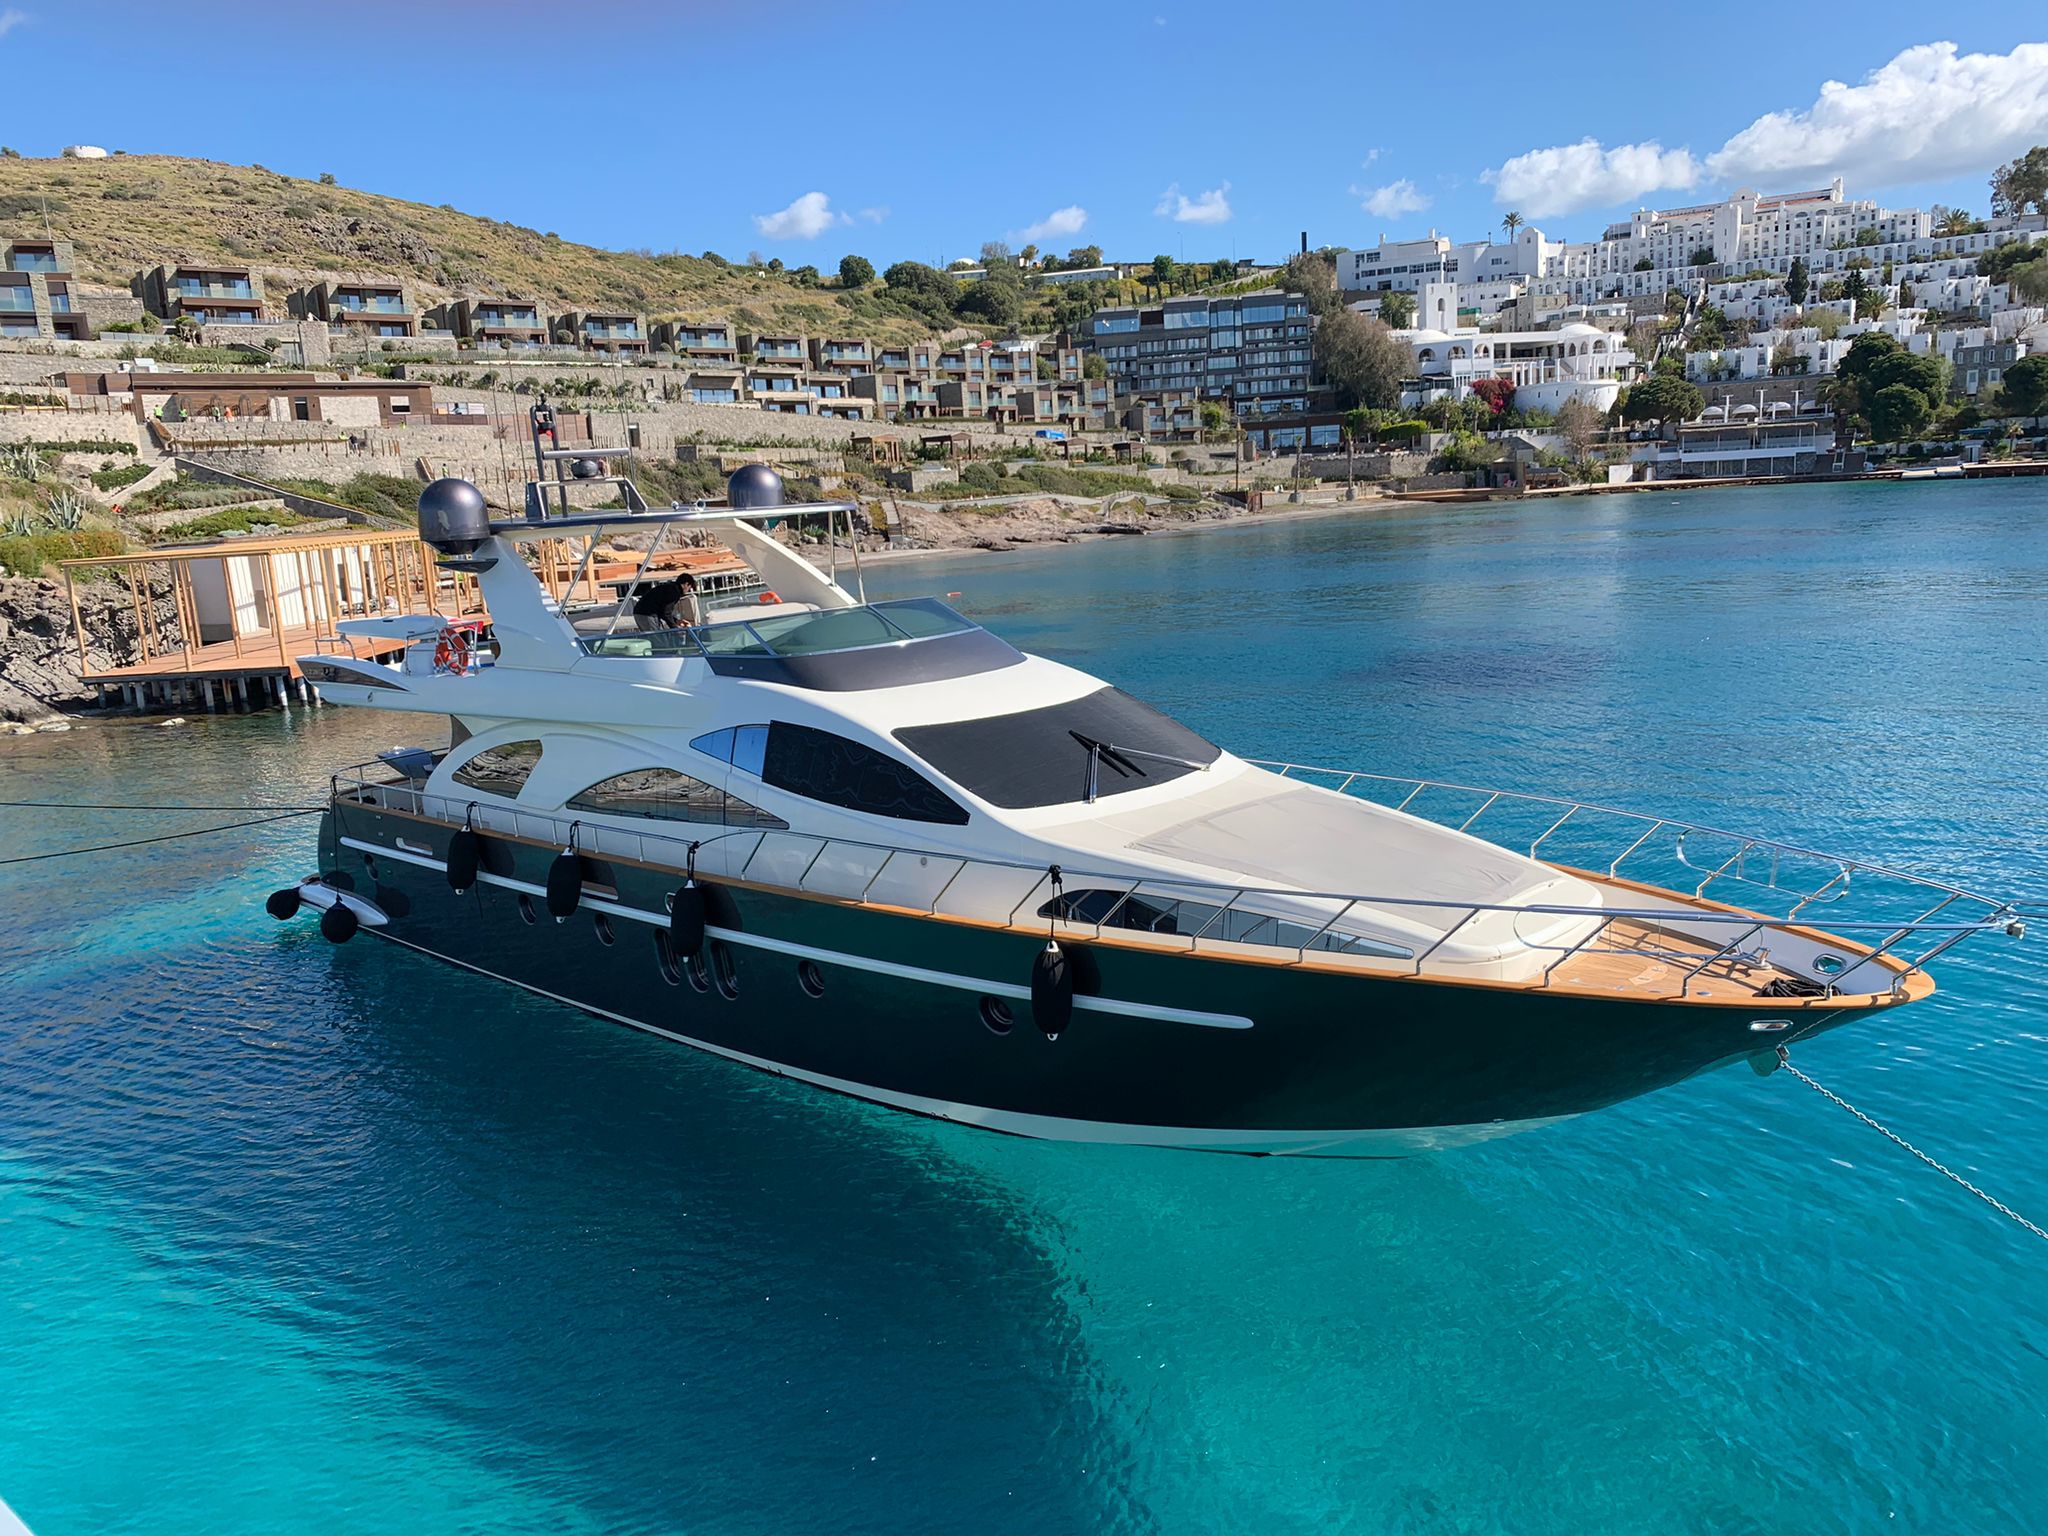 Azimut 80 - Motor Boat Charter Greece & Boat hire in Greece Cyclades Islands Mykonos Mykonos 2